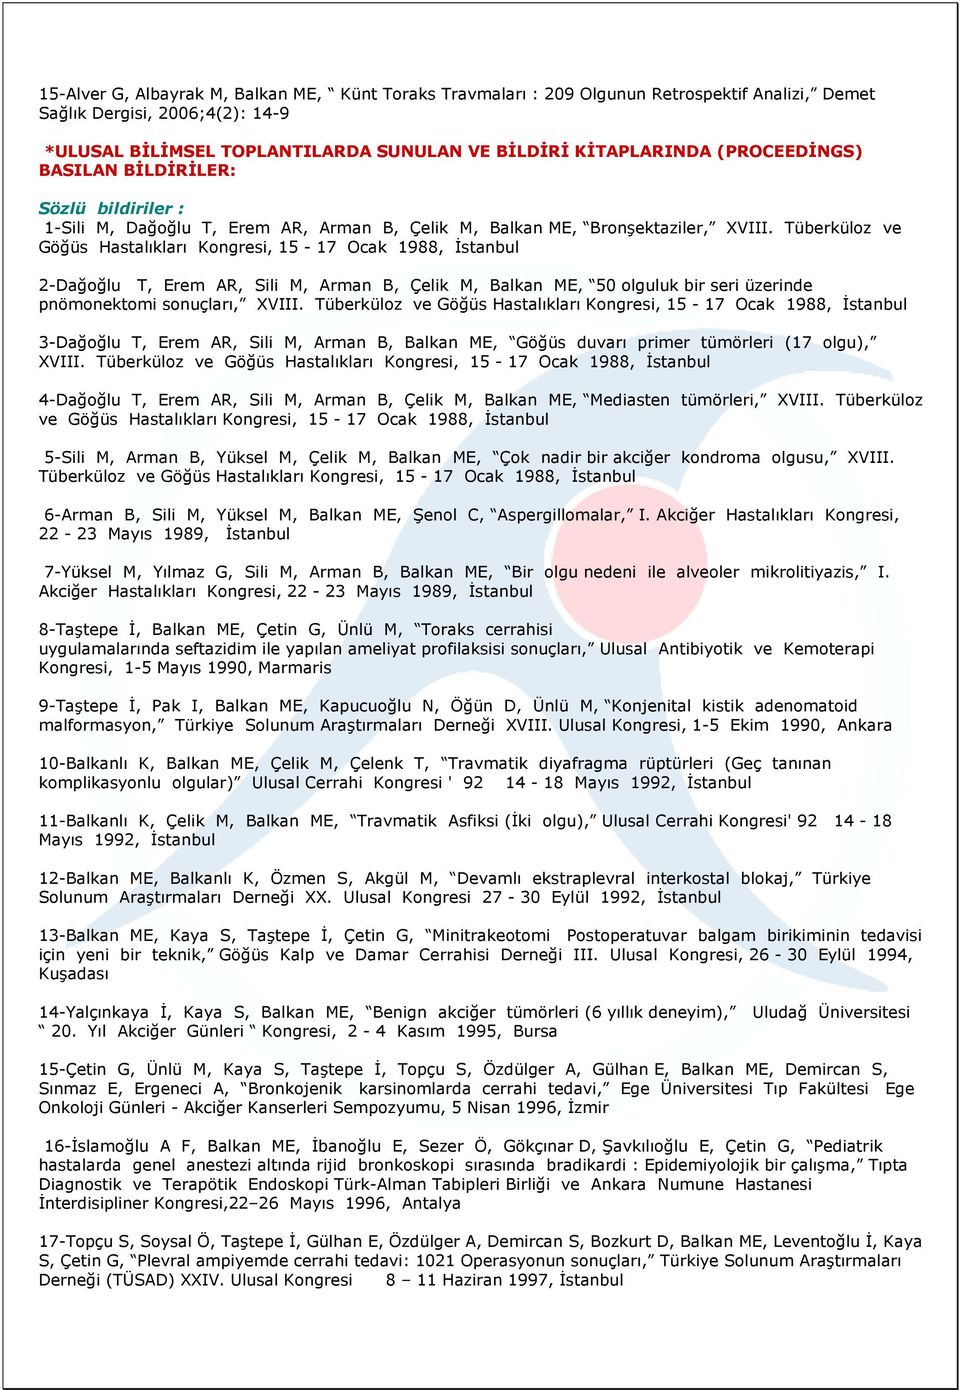 Tüberküloz ve Göğüs Hastalıkları Kongresi, 15-17 Ocak 1988, Đstanbul 2-Dağoğlu T, Erem AR, Sili M, Arman B, Çelik M, Balkan ME, 50 olguluk bir seri üzerinde pnömonektomi sonuçları, XVIII.